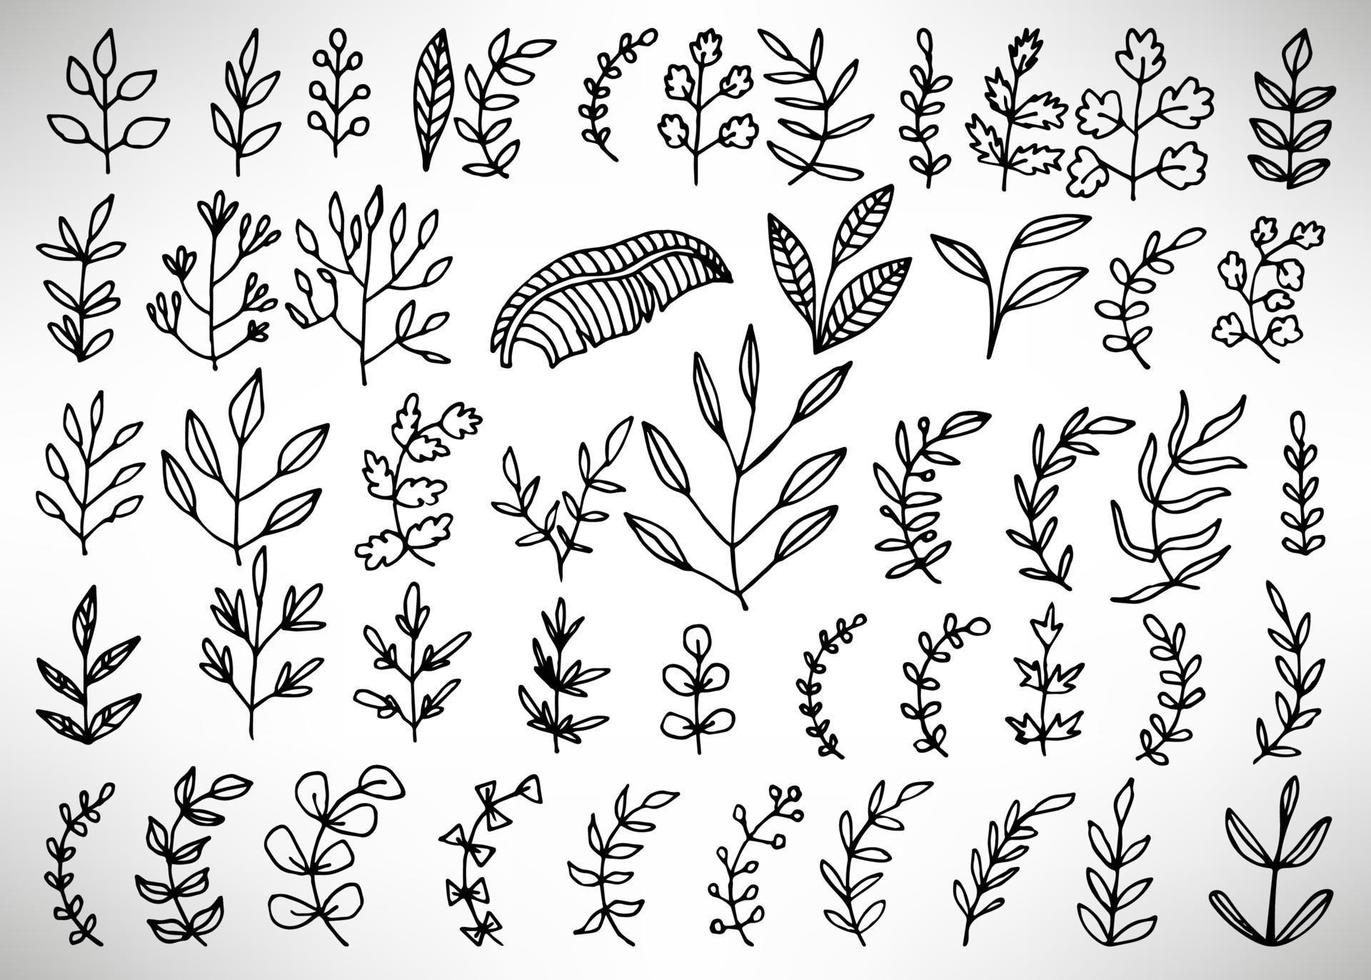 Blumenset aus handgezeichneten Elementen mit schwarzem Umriss, Baumzweig, Busch, Pflanze, tropische Blätter, Zweige, Blütenblätter einzeln auf Weiß. Sammlung für Design. vektor